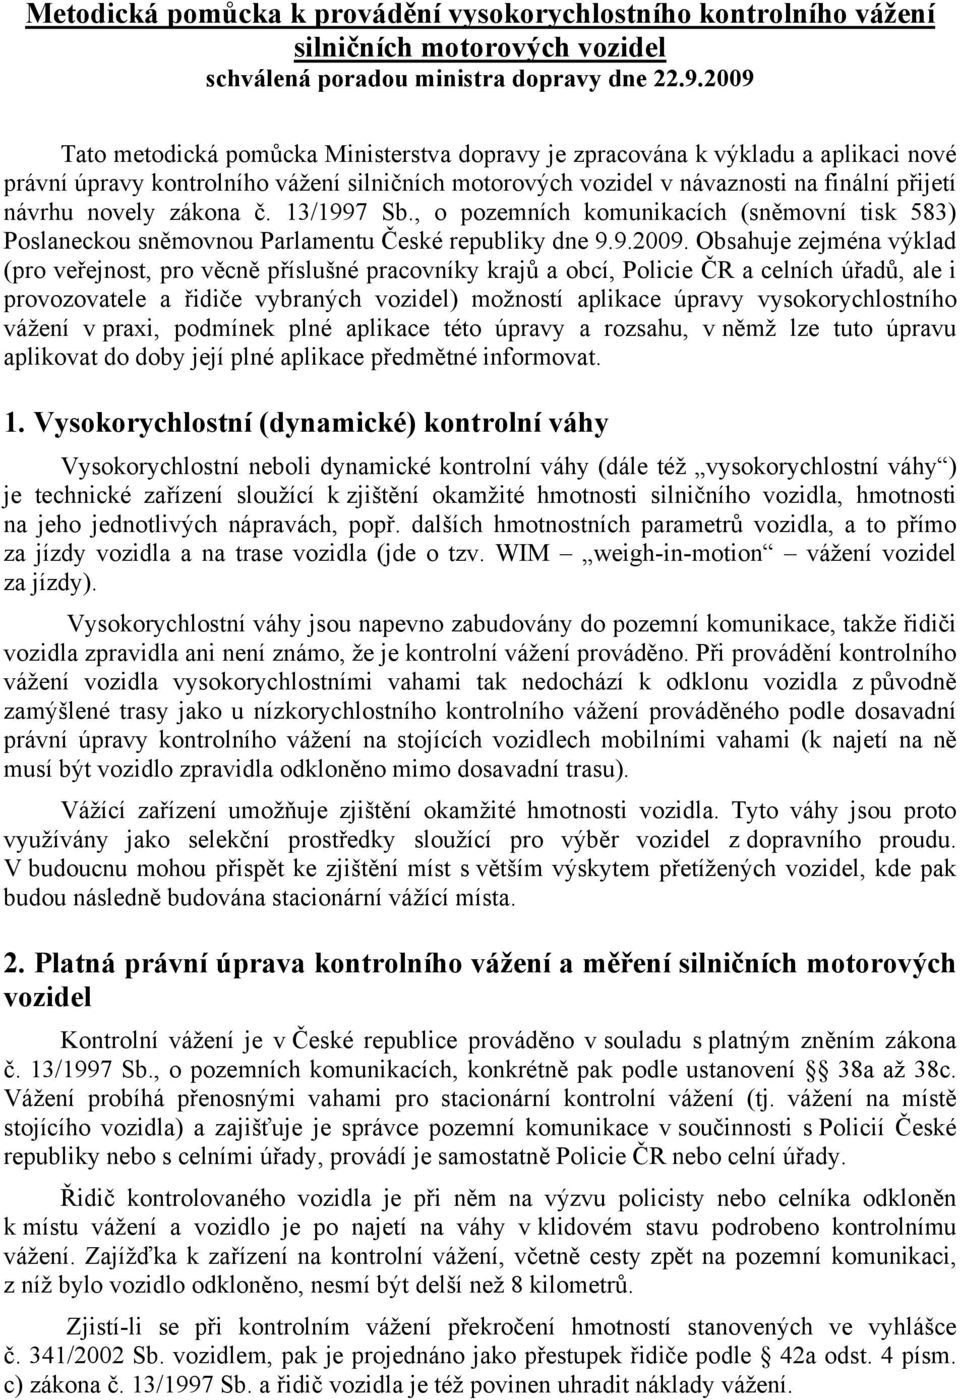 zákona č. 13/1997 Sb., o pozemních komunikacích (sněmovní tisk 583) Poslaneckou sněmovnou Parlamentu České republiky dne 9.9.2009.